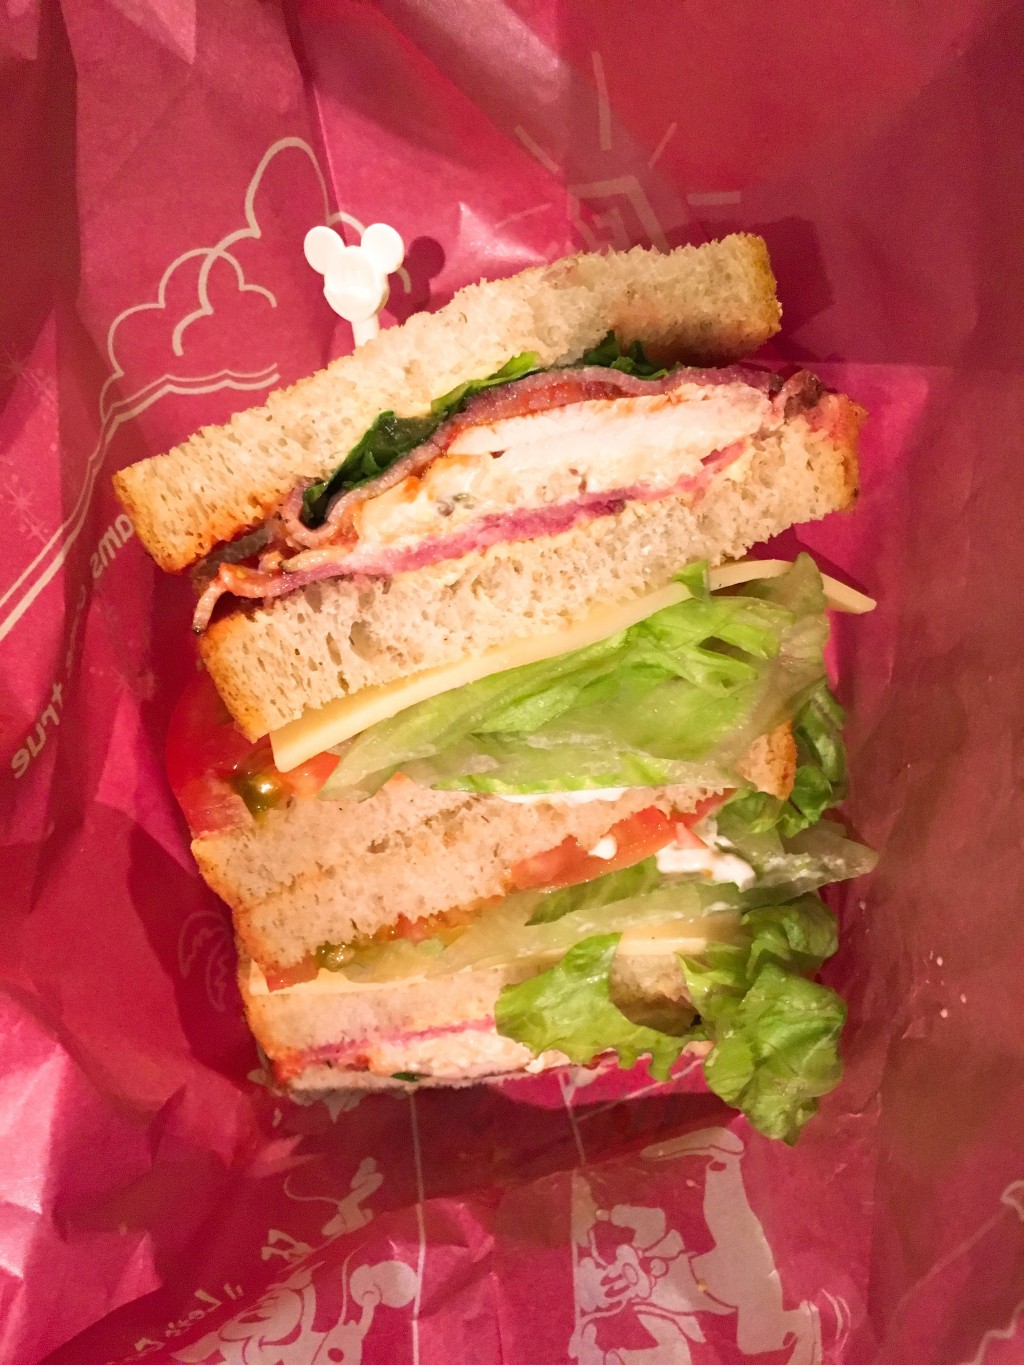 東京ディズニーシーのレストラン ニューヨークデリ のメニューを紹介 サンドイッチやポテトなど テイクアウトも可能 ひよこファミリー